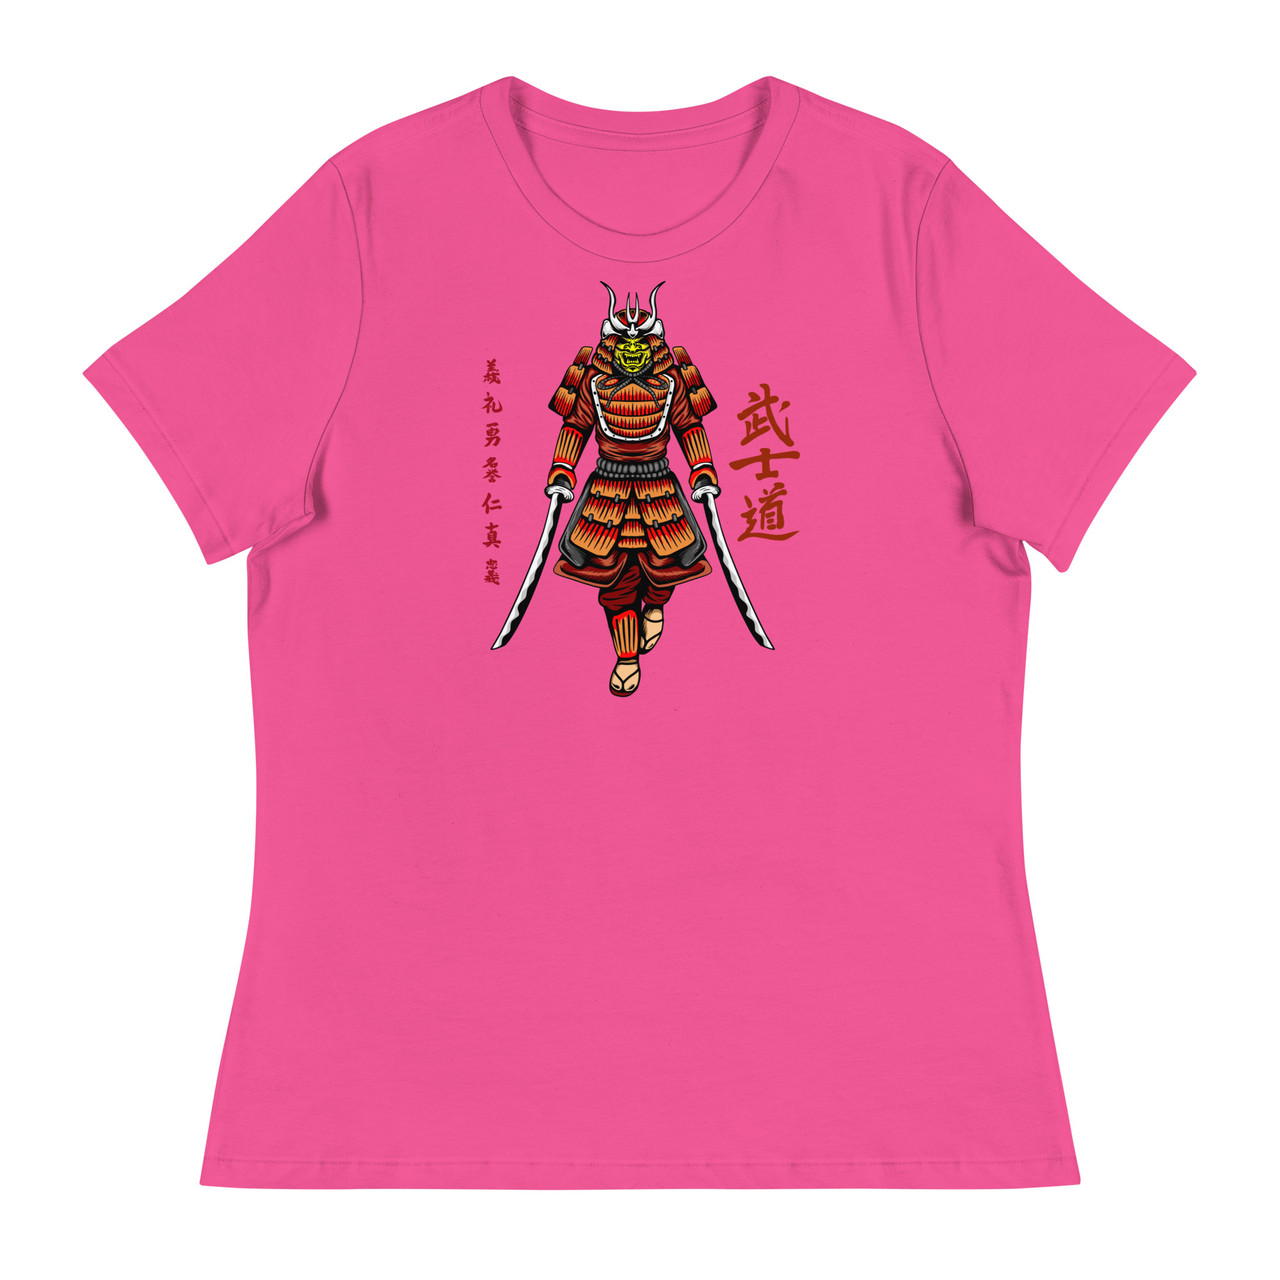 Samurai 11 Women's Relaxed T-Shirt - Bella + Canvas 6400 